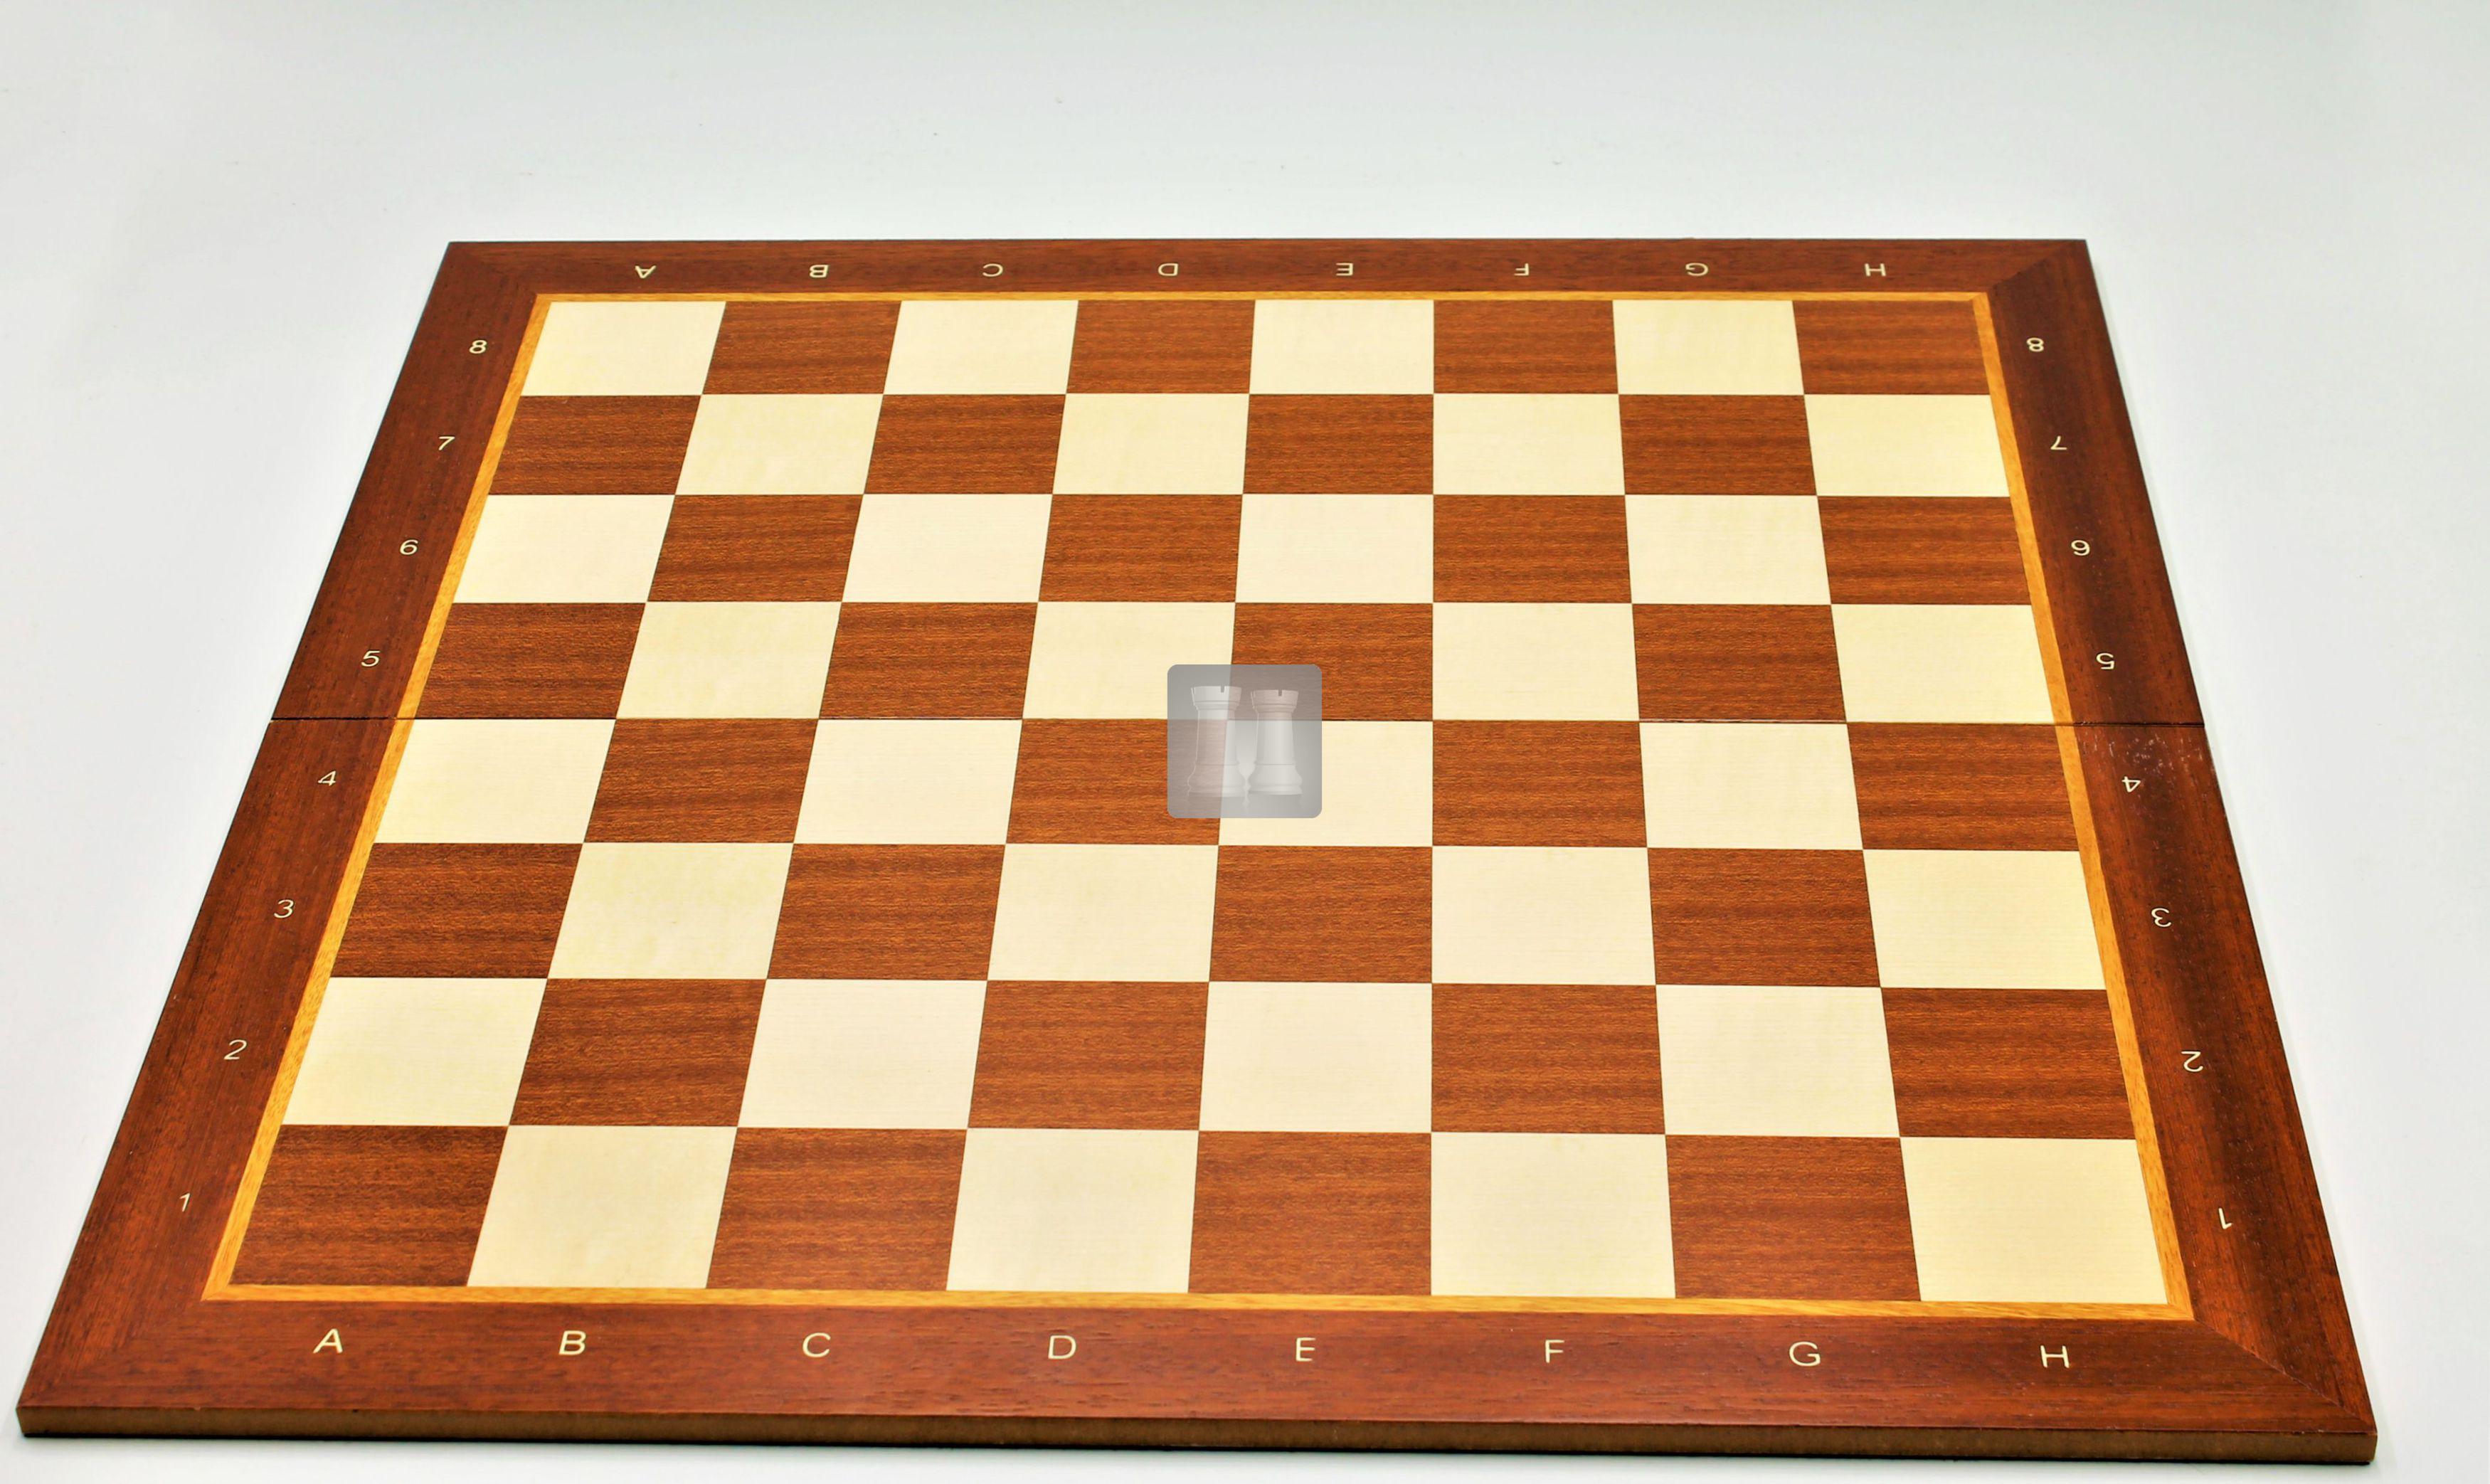 Elegante a Scacchi gioco degli scacchi 60 x 60 cm scolpito a mano scolpito in legno NUOVO 